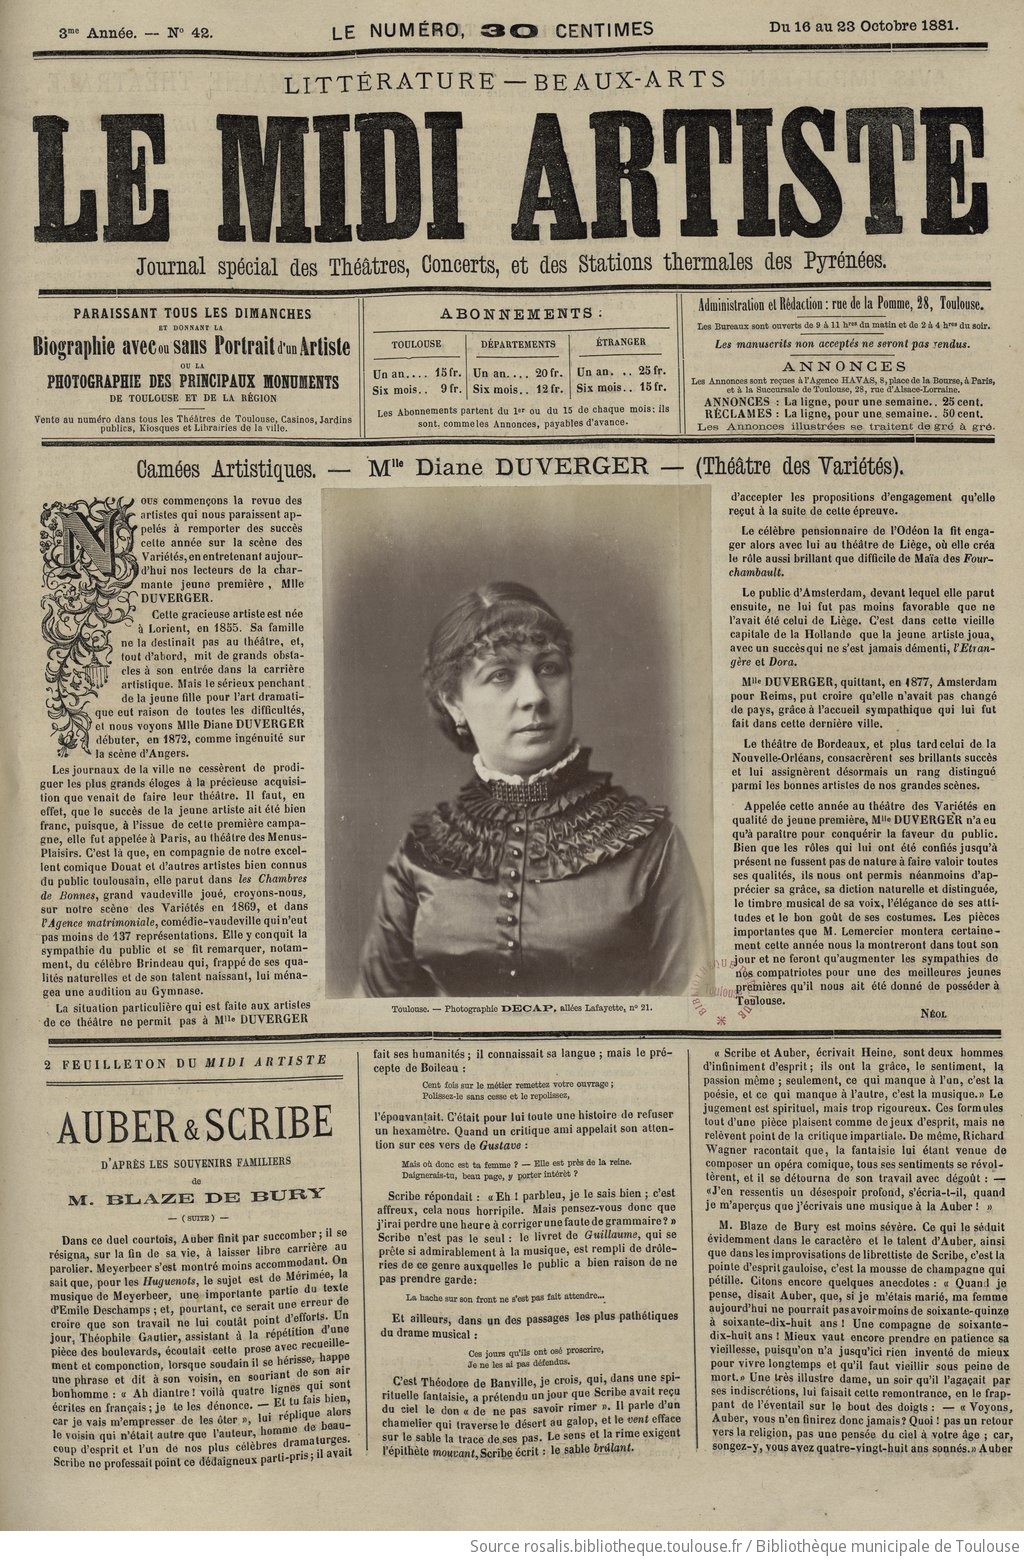 Le Midi artiste : journal spécial des théâtres, concerts, skatings, etc. |  1881-10-16 | Documents du site Rosalis